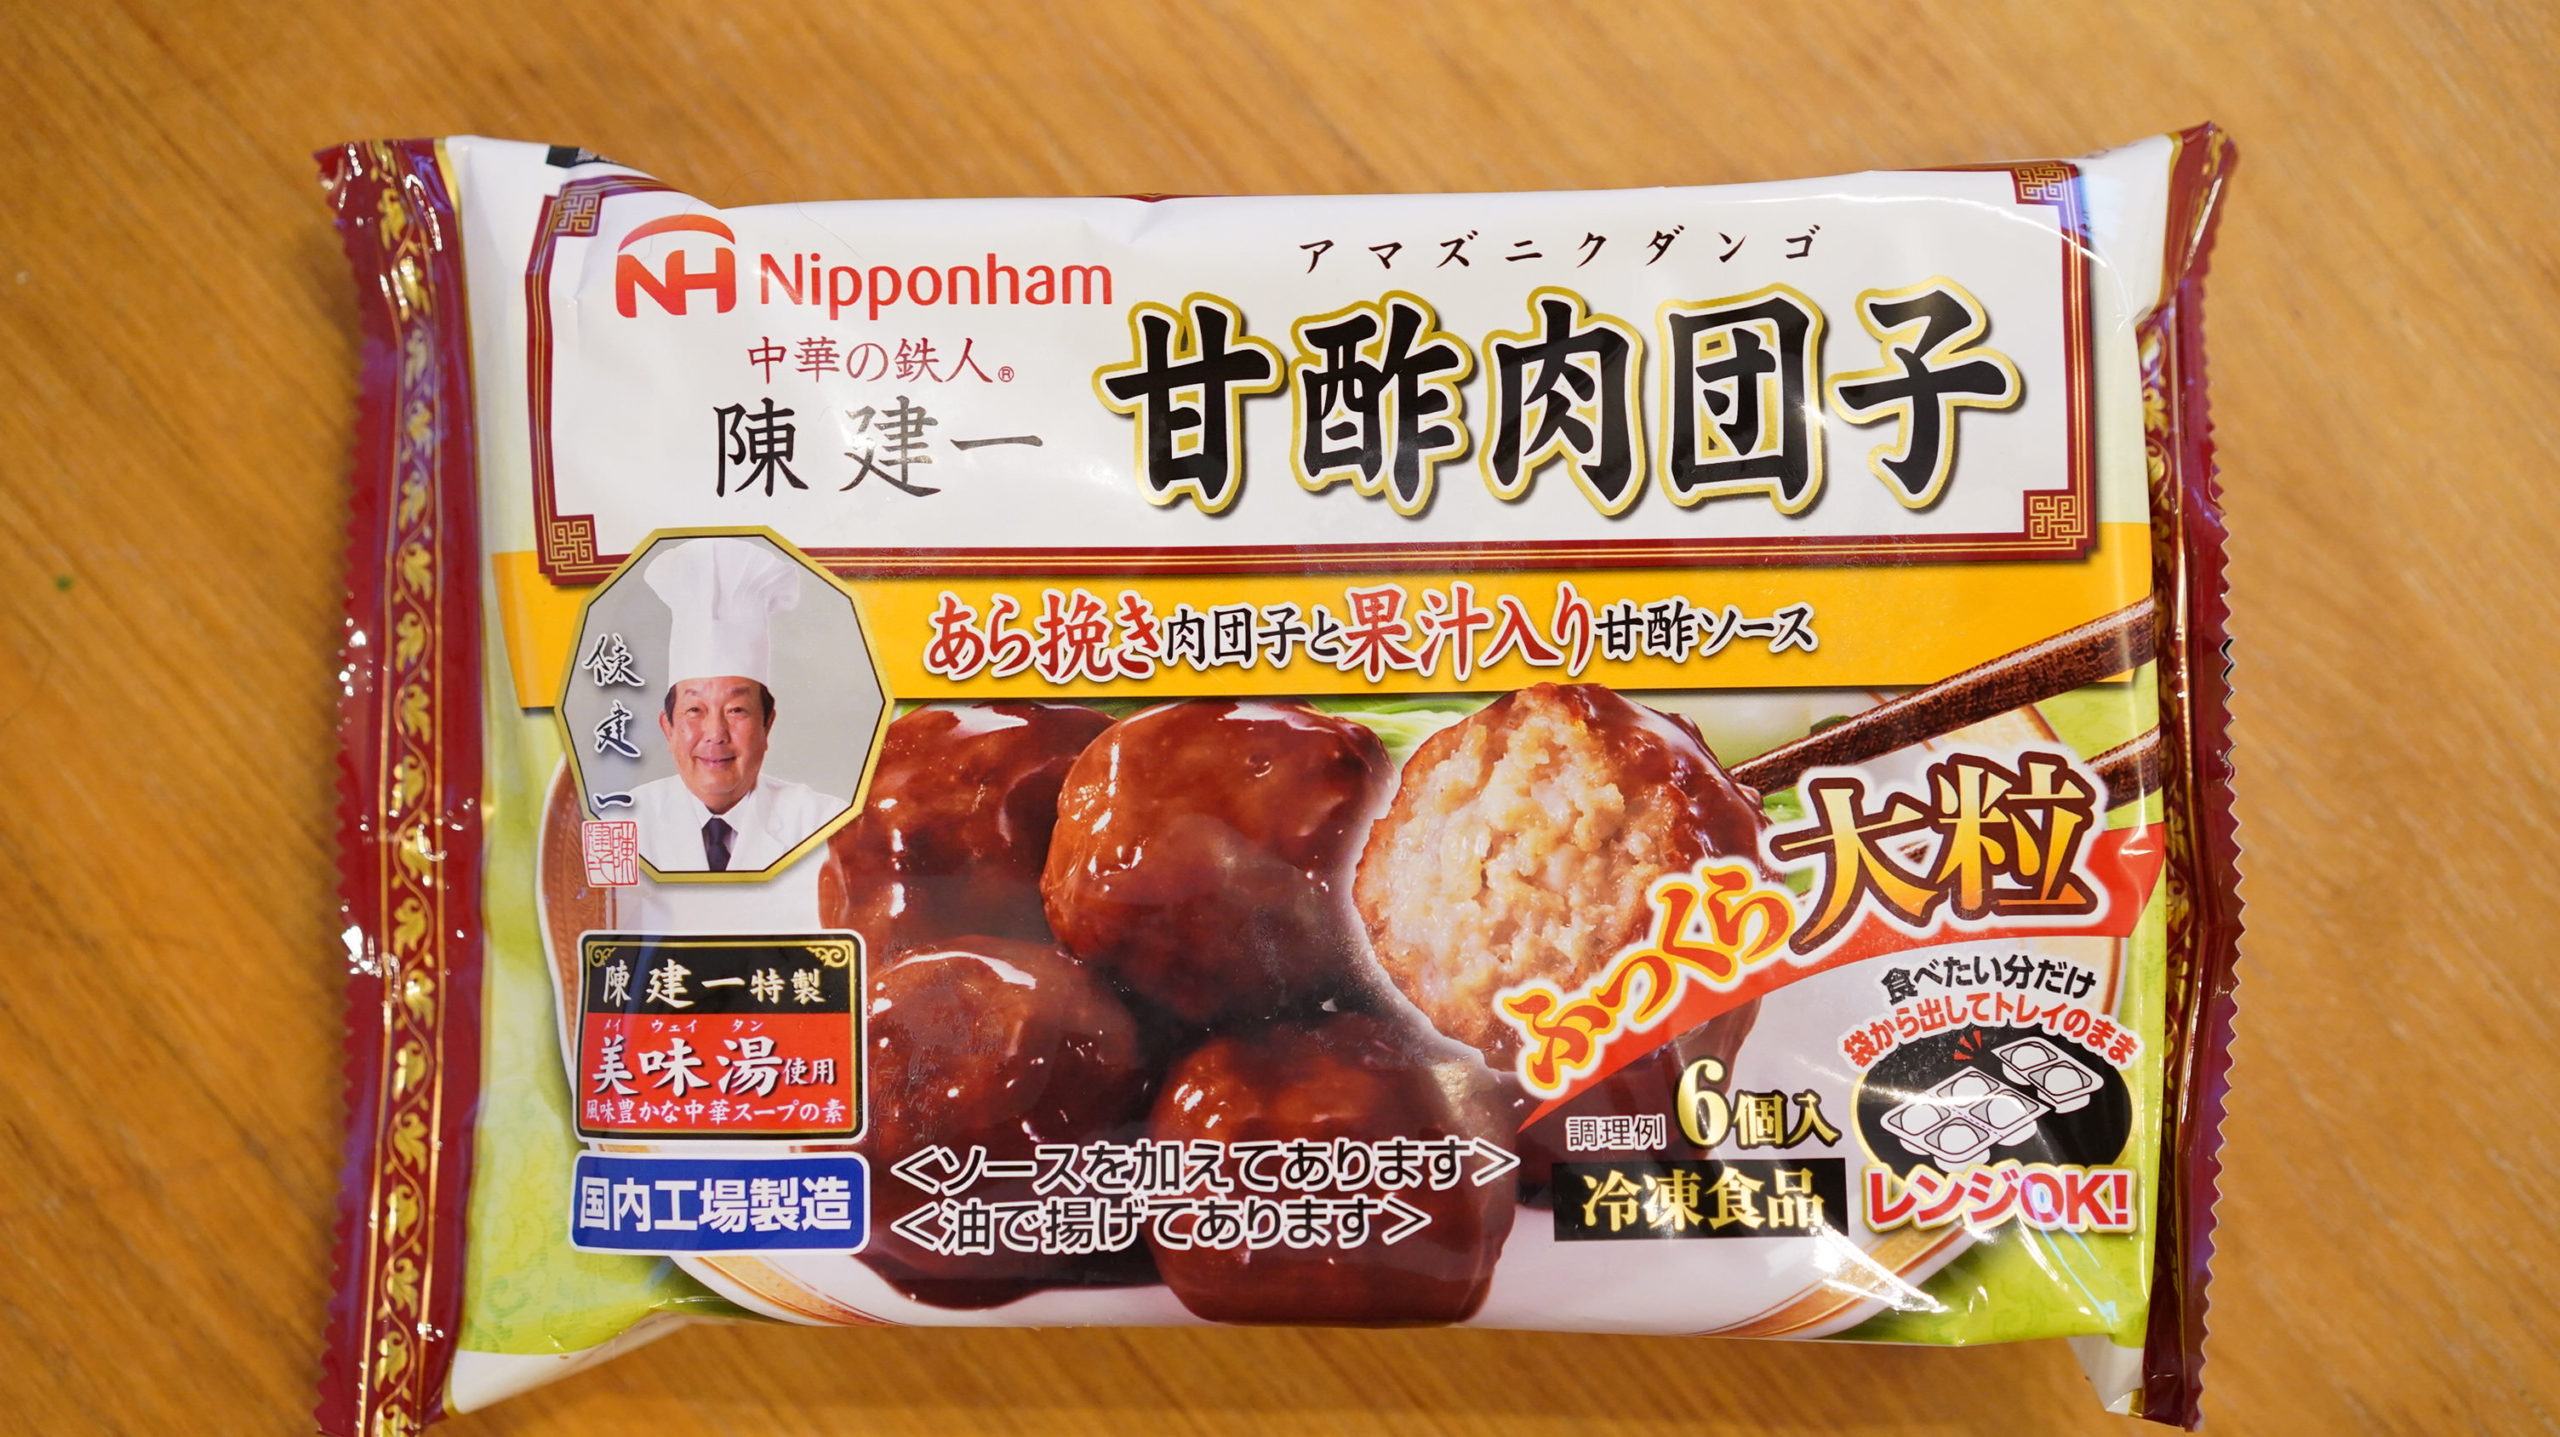 冷凍食品 甘酢肉団子 はお弁当に最適でフワフワ食感が美味しい 日本ハム